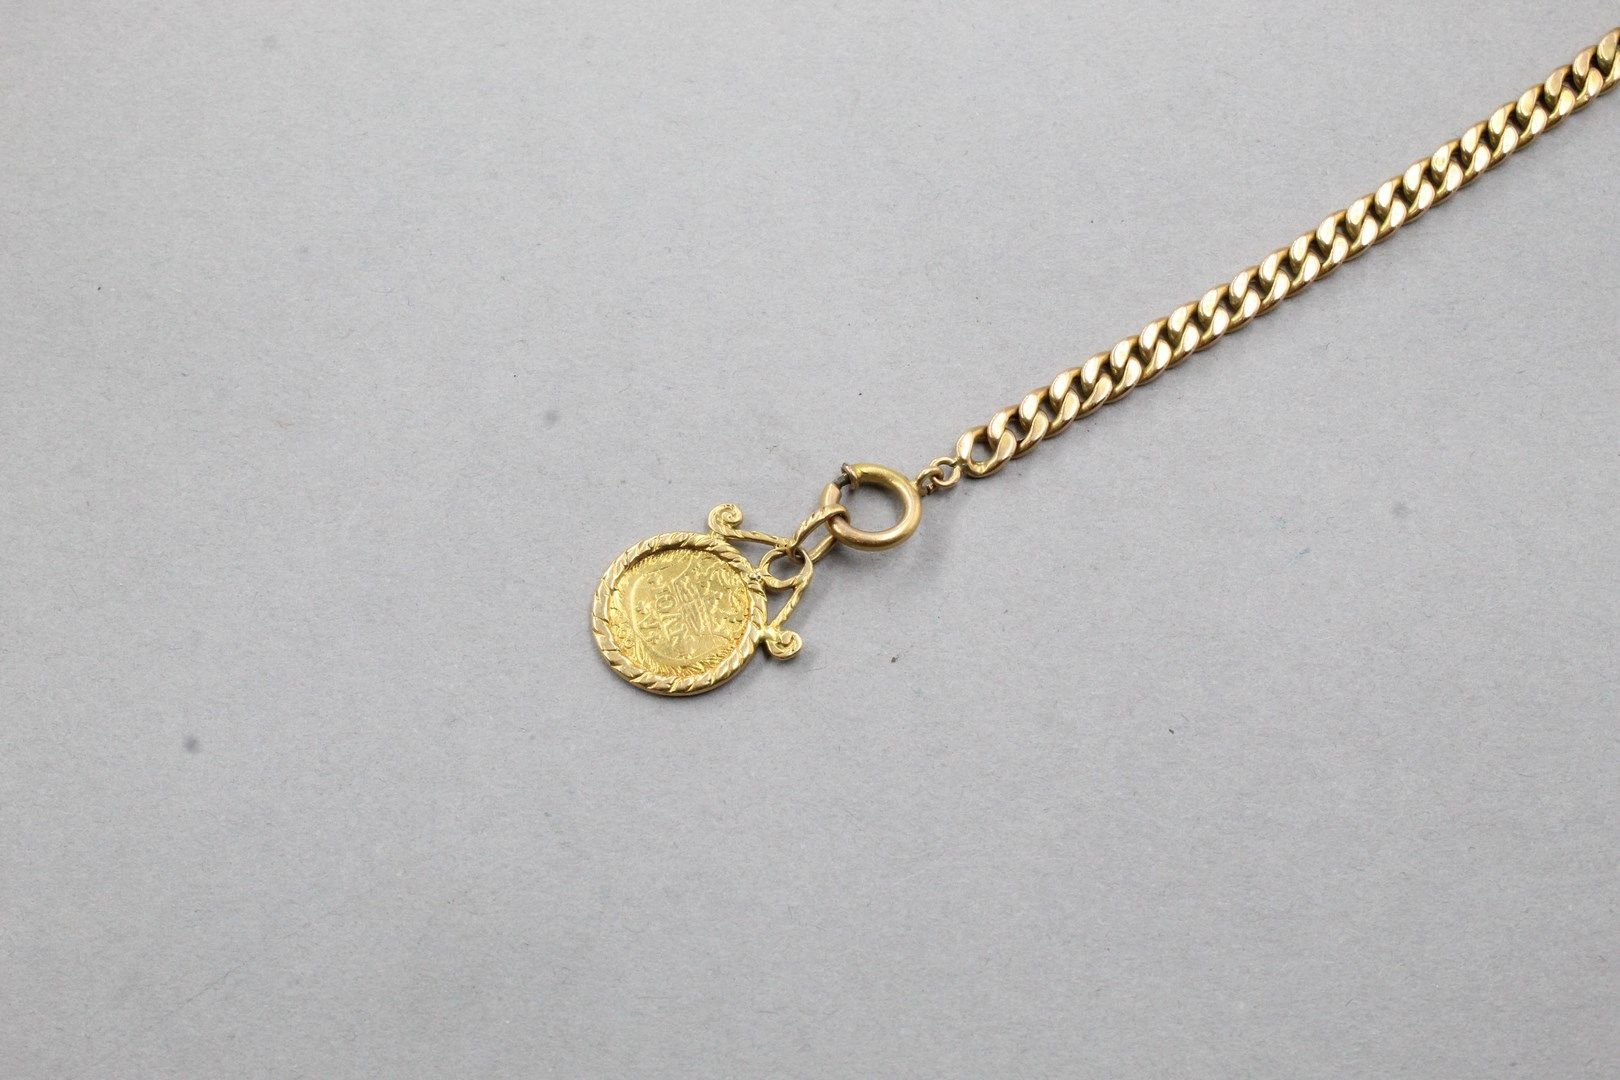 Null Armband aus 18 Karat Roségold (750), mit einer kleinen Goldmünze verziert.
&hellip;